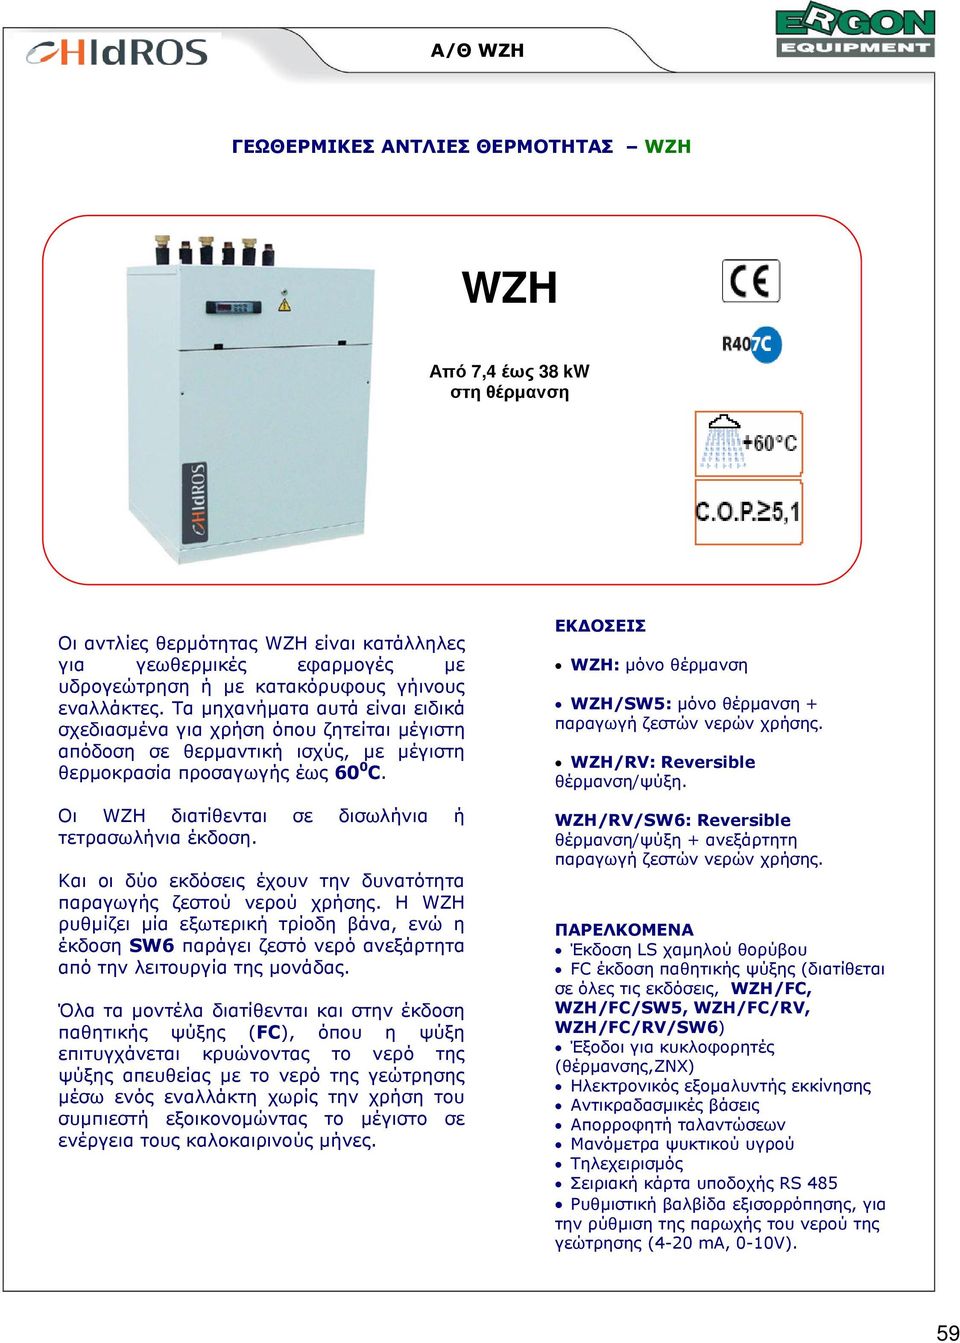 Οι WZH διατίθενται σε δισωλήνια ή τετρασωλήνια έκδοση. Και οι δύο εκδόσεις έχουν την δυνατότητα παραγωγής ζεστού νερού χρήσης.